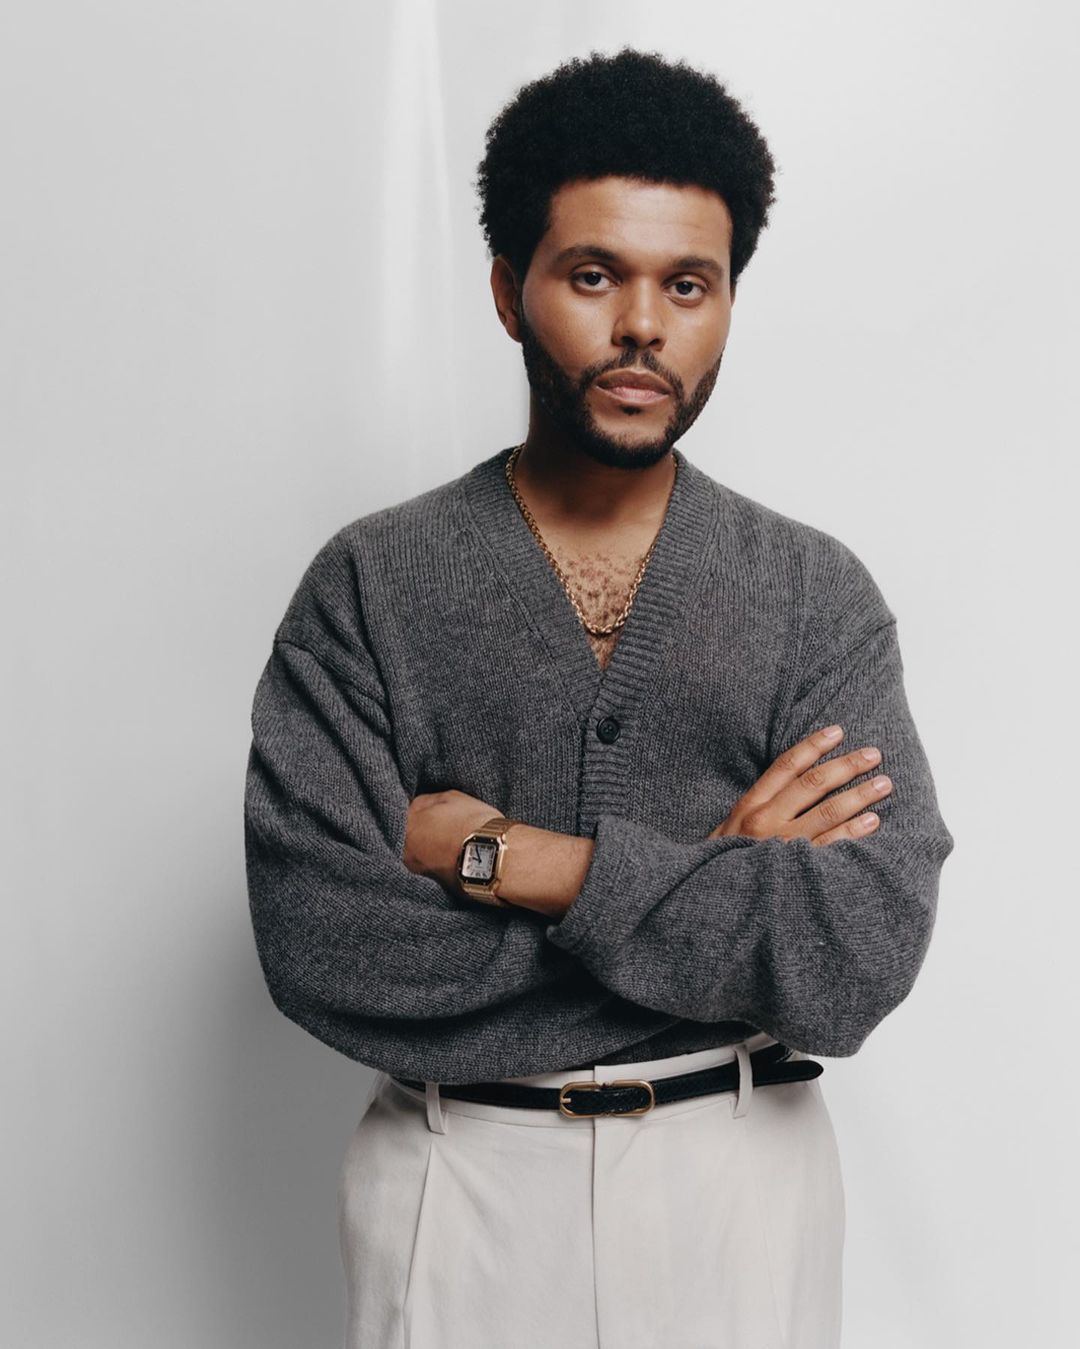 The Weeknd отказался от сценического имени. Как теперь нужно называть певца?